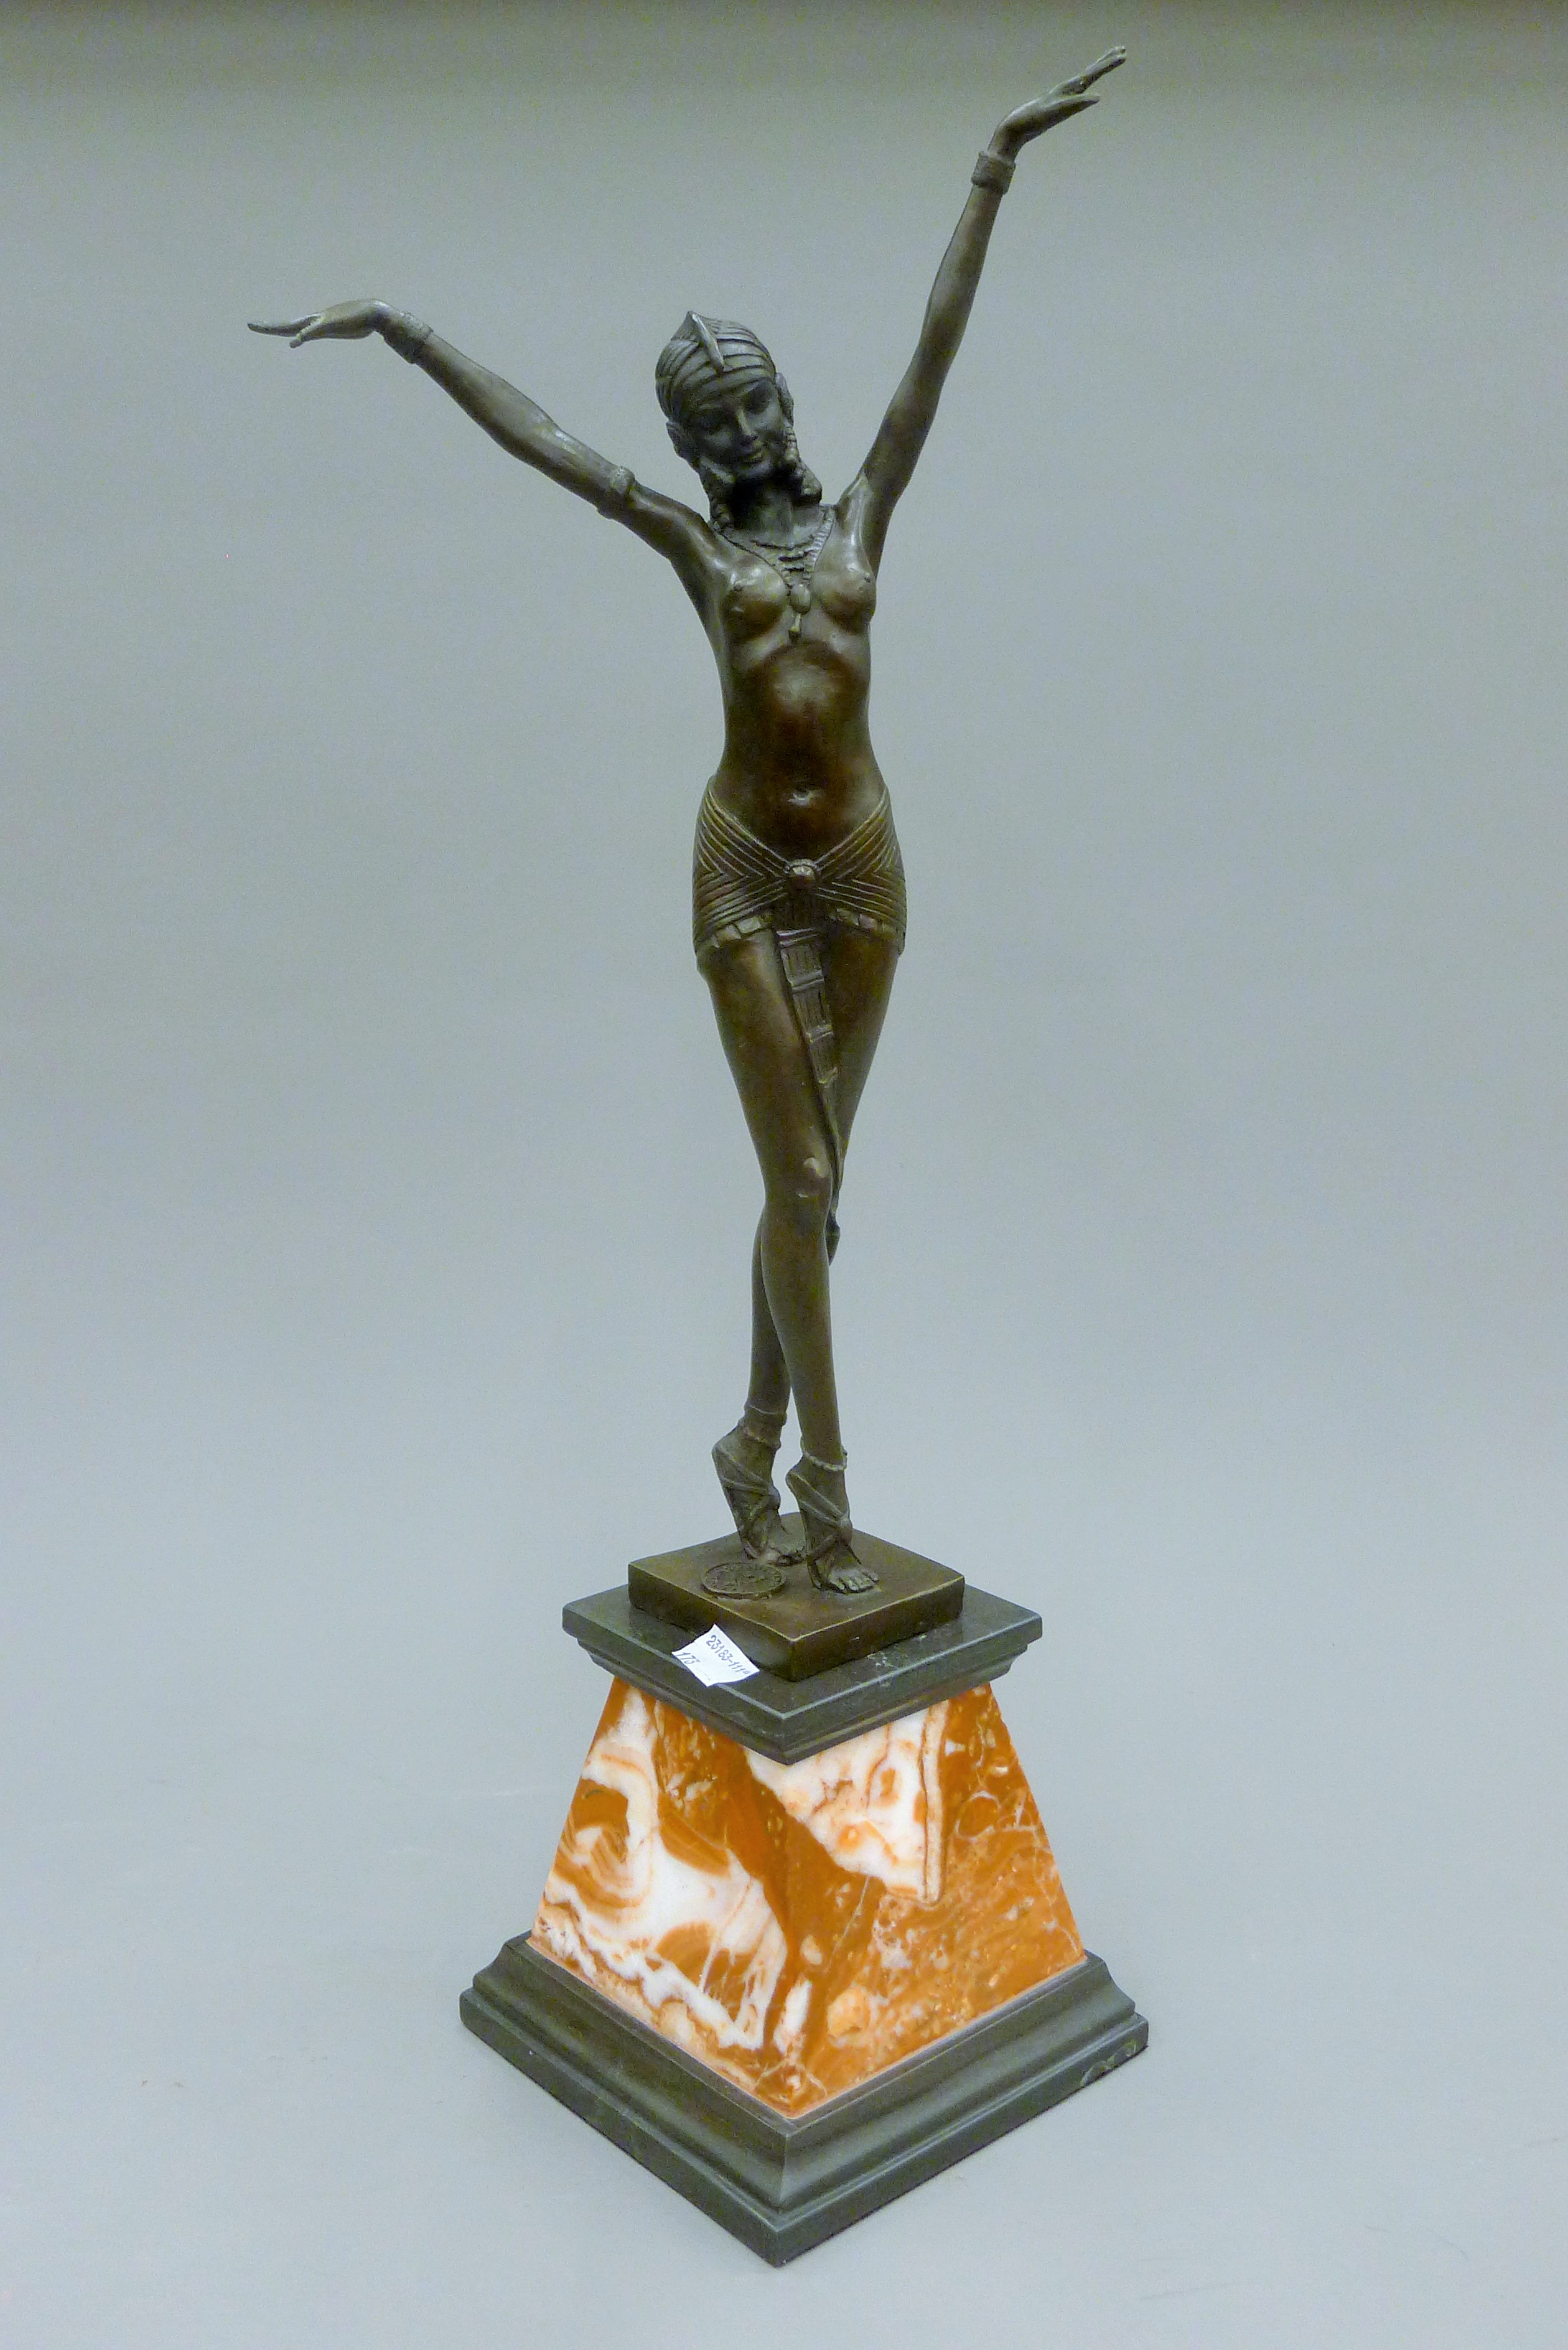 An Art Deco style bronze figure. 56 cm high.